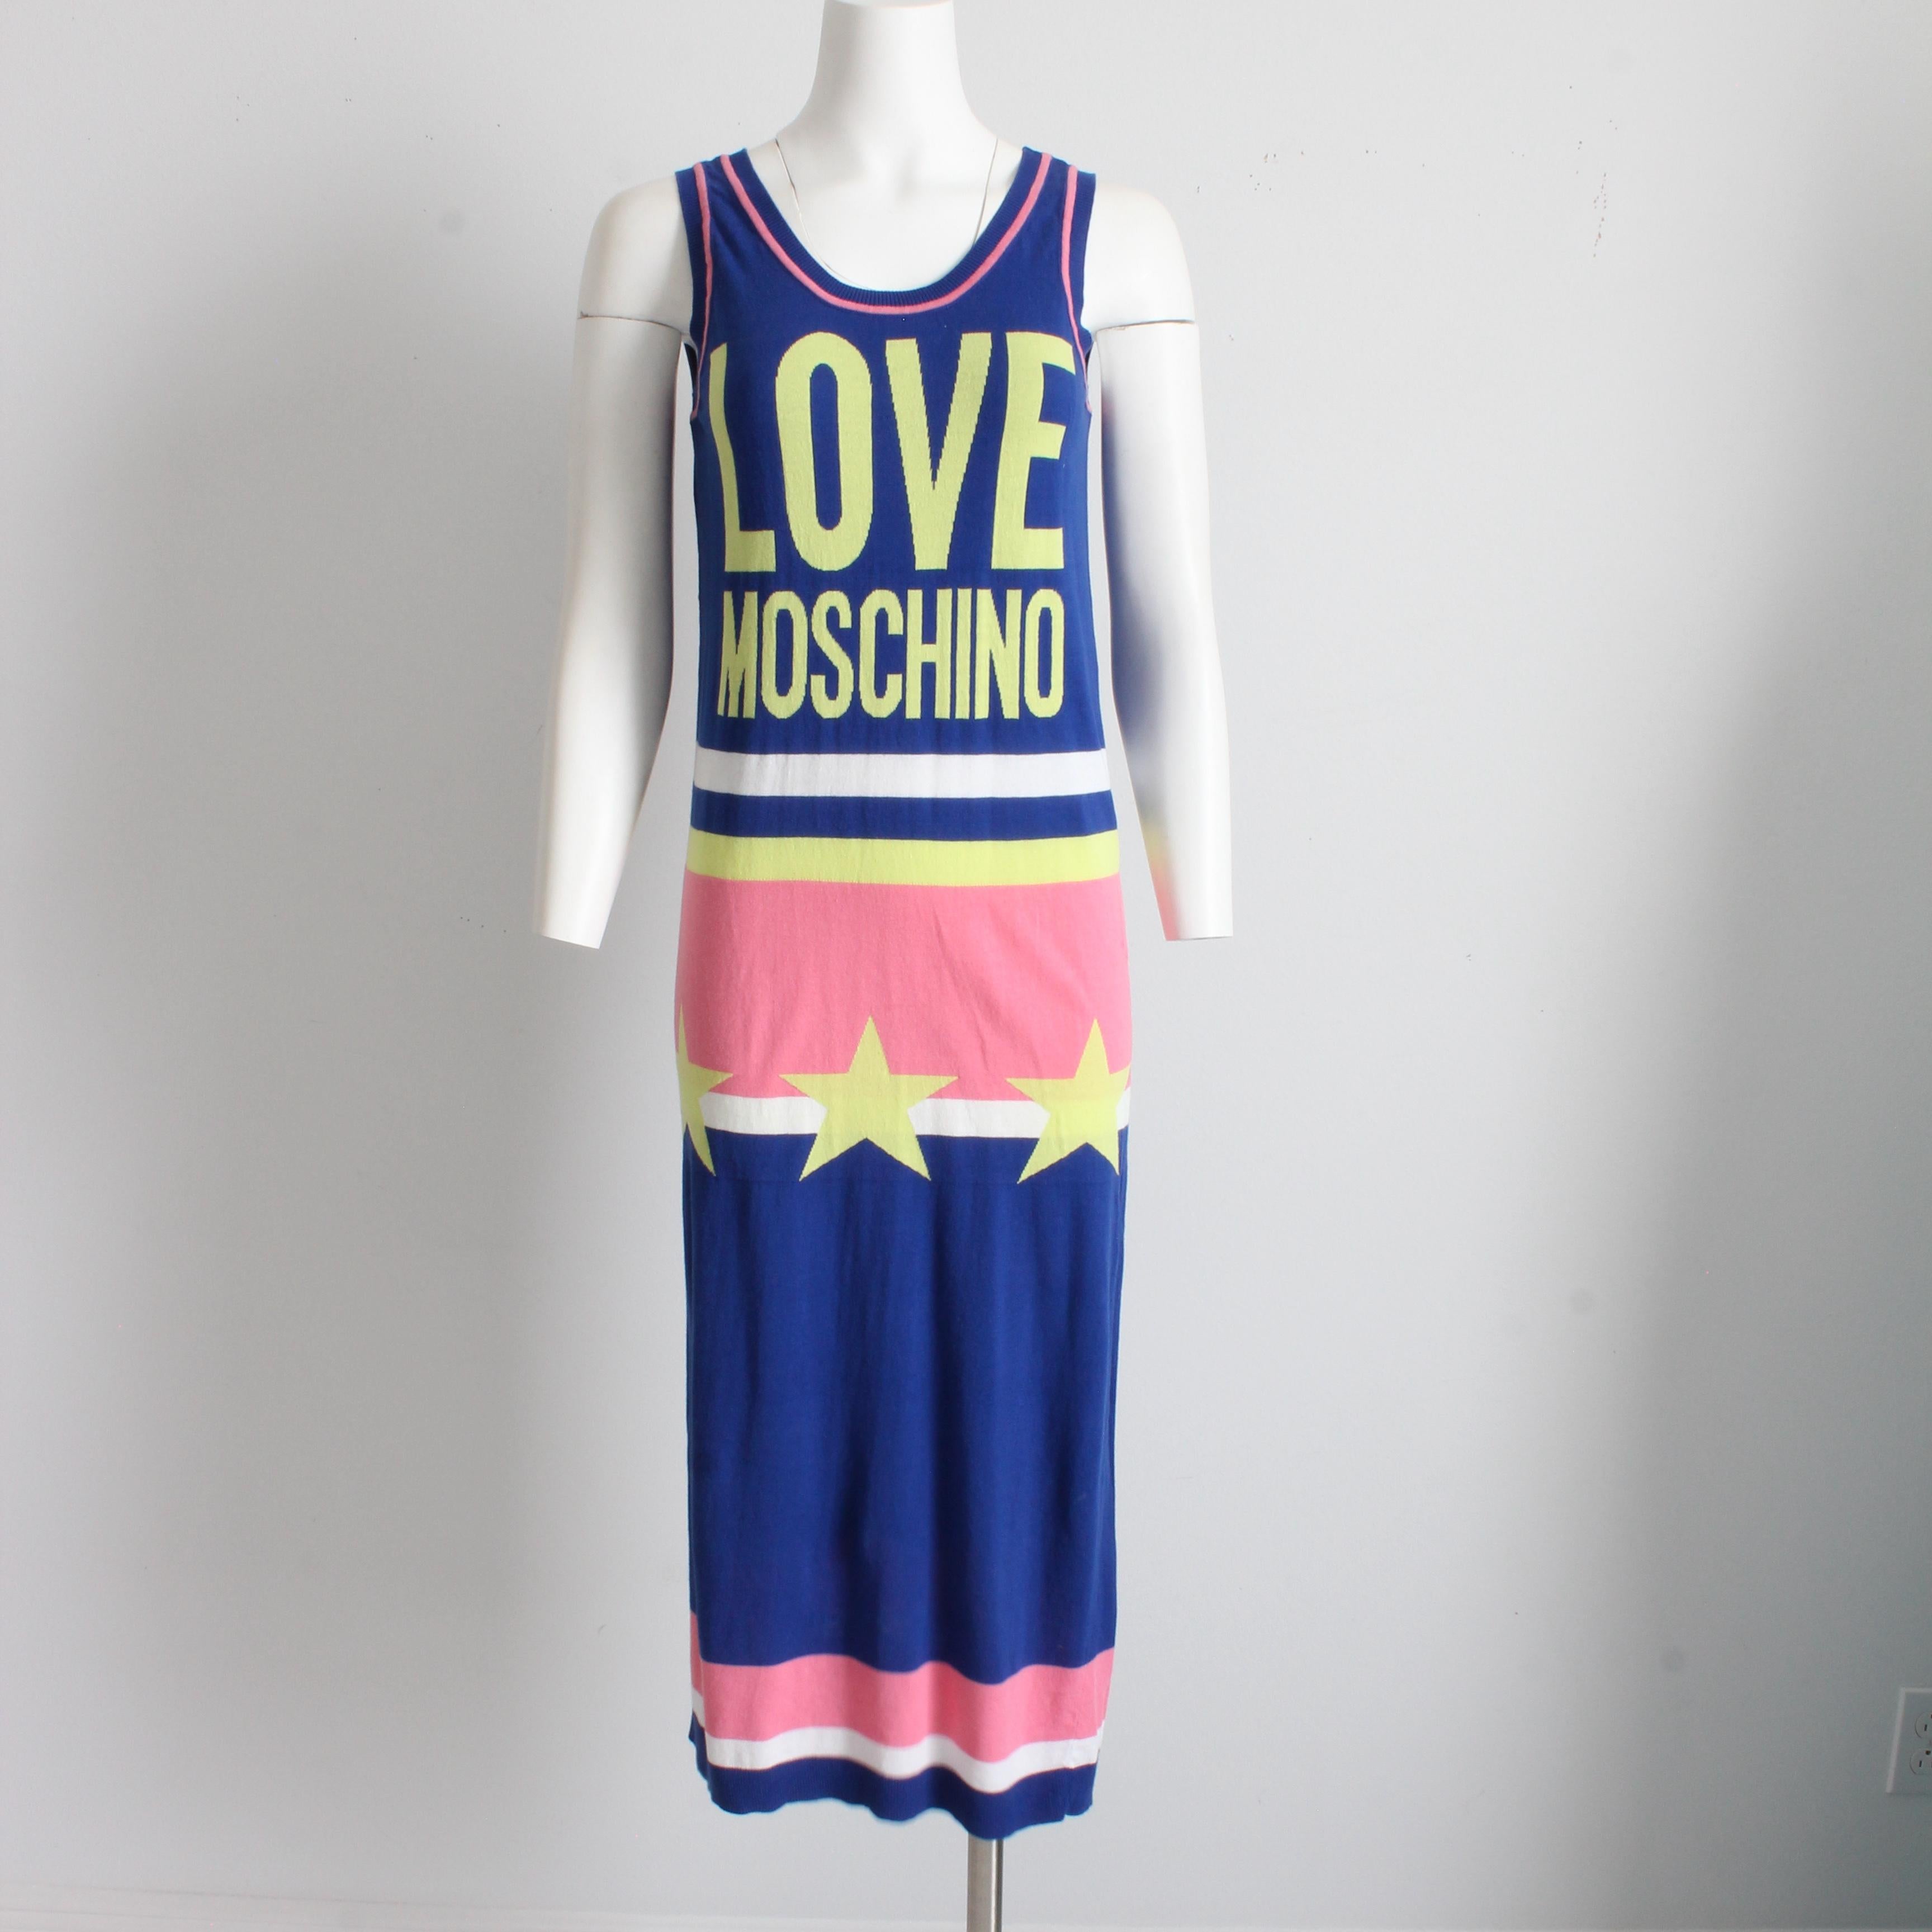 Robe longue Moschino d'occasion, presque vintage, réalisée pour la ligne LOVE MOSCHINO, probablement au milieu des années 2000. 

Confectionné en maille de coton doux dans un bloc de couleurs bleu et rose, il présente des étoiles graphiques